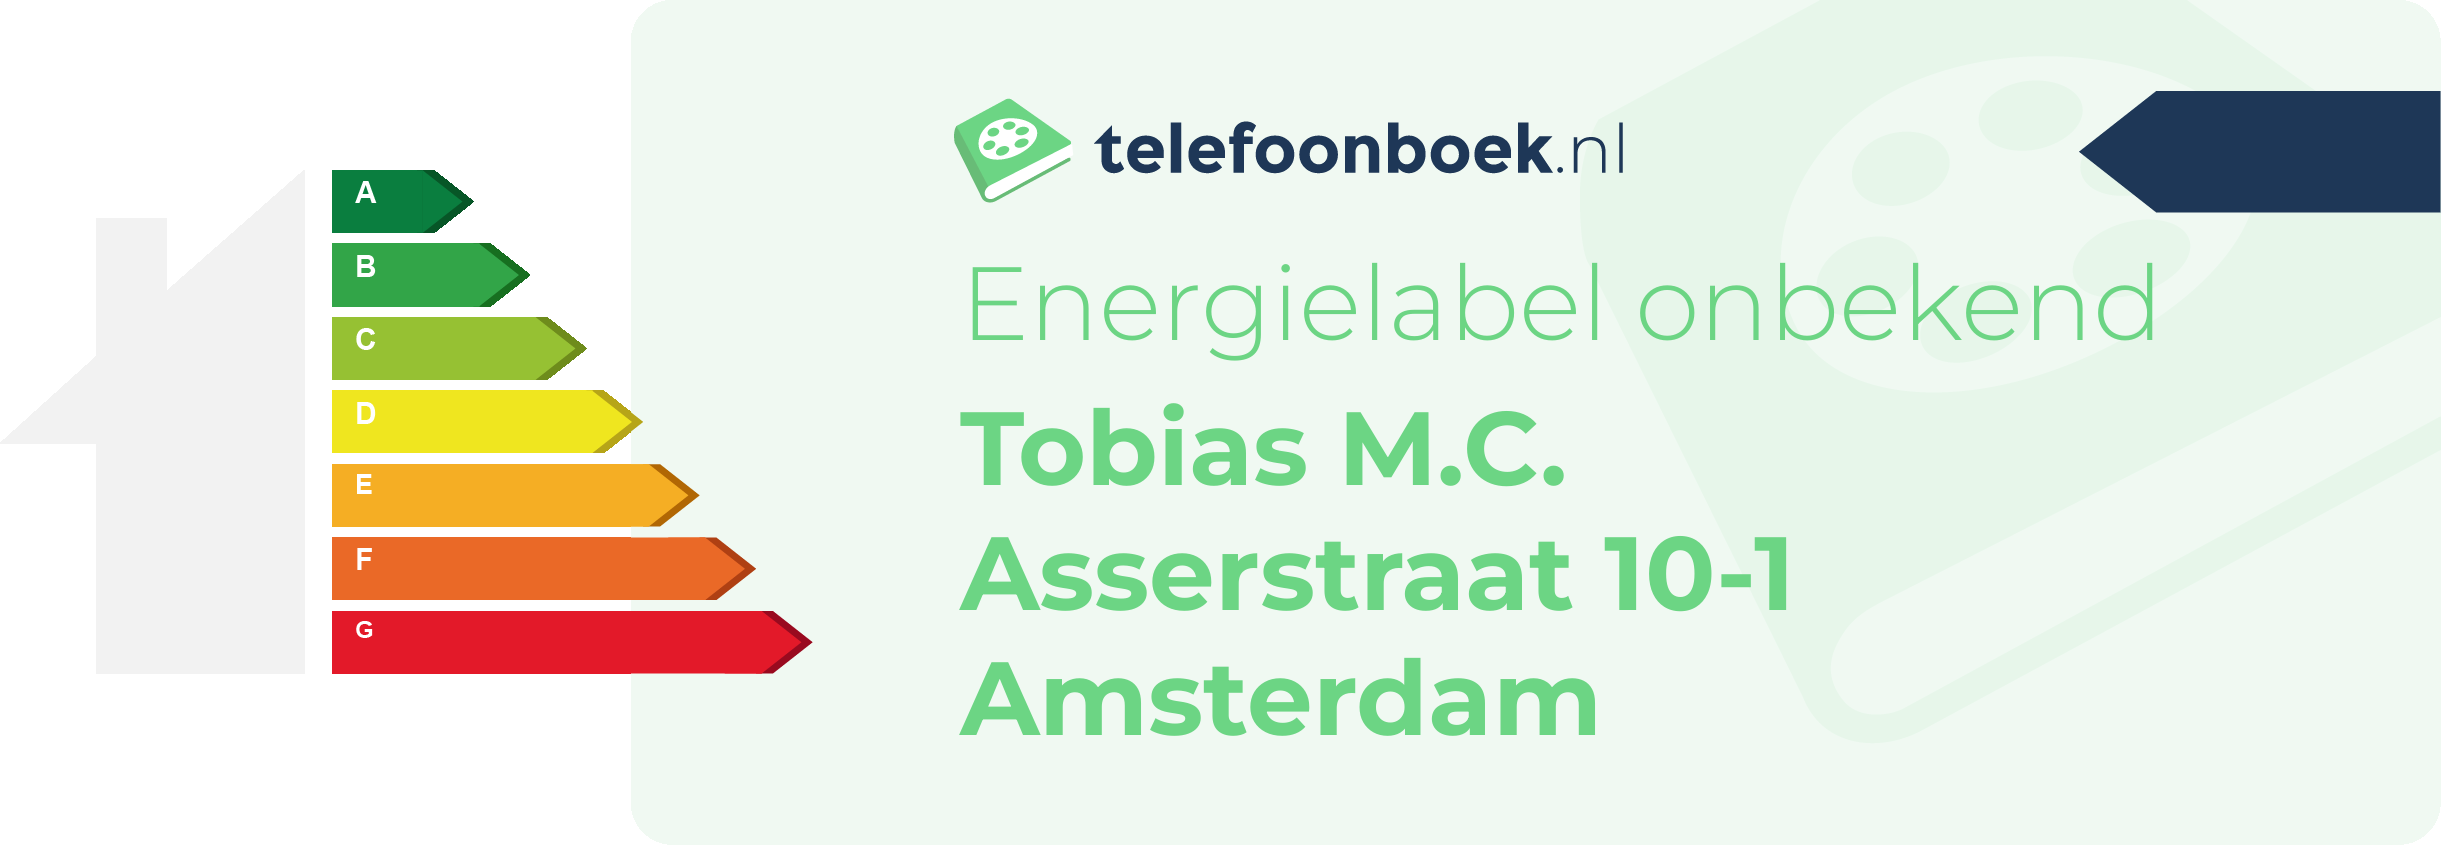 Energielabel Tobias M.C. Asserstraat 10-1 Amsterdam